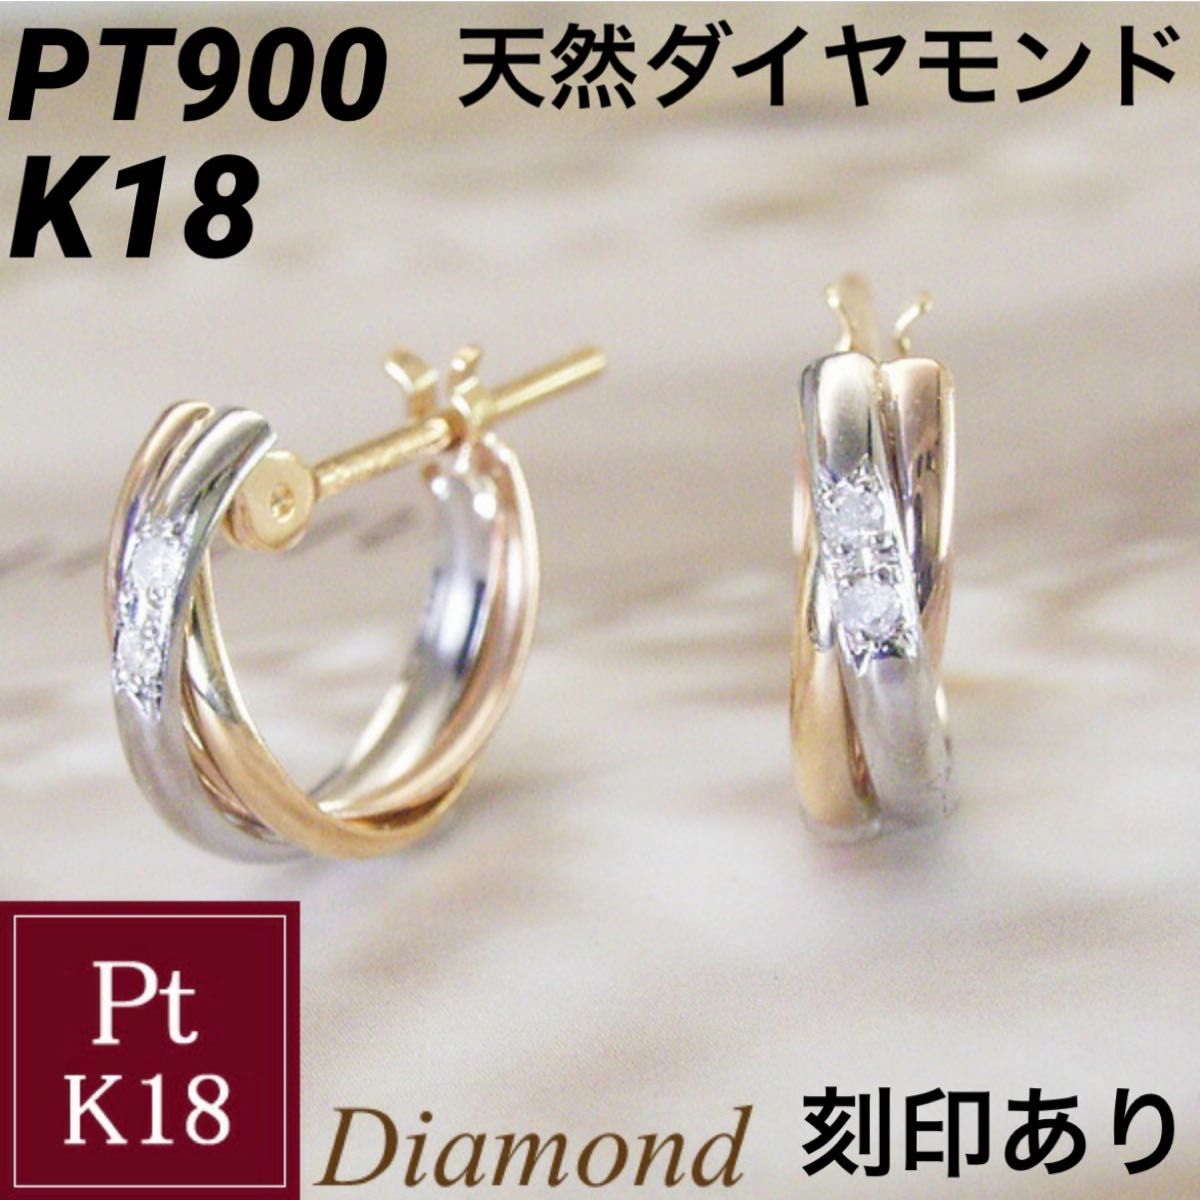 新品 PT900 K18 天然ダイヤモンド プラチナ 18金 トリニティ フープ